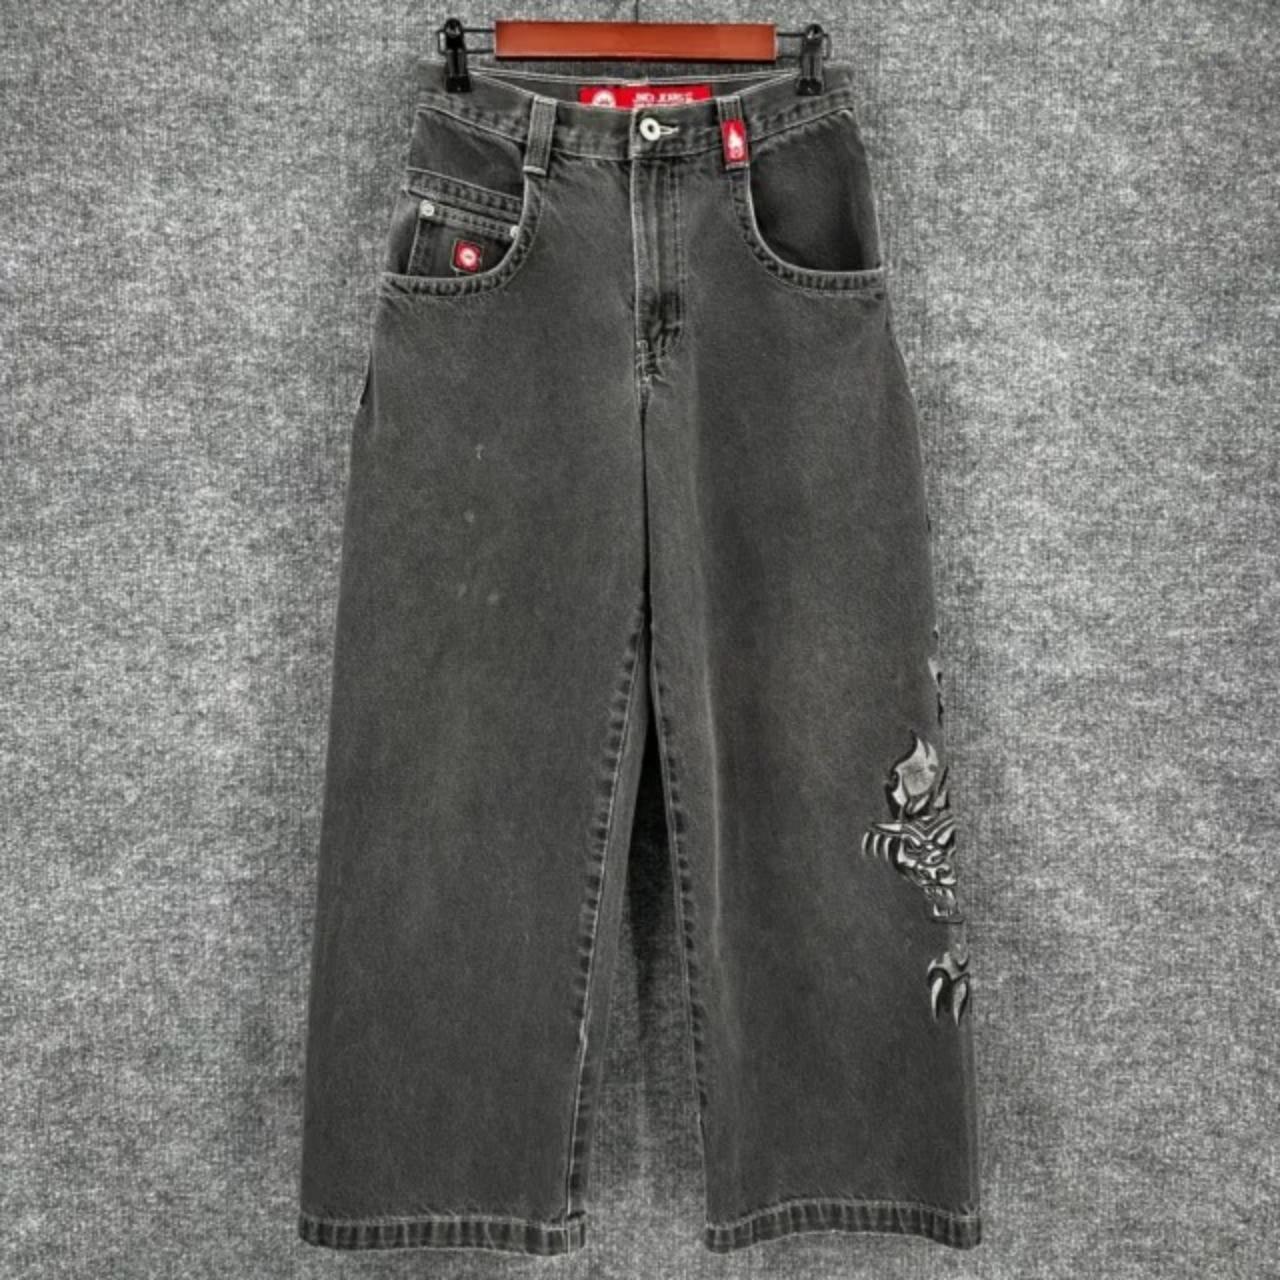 Jnco men's navy jeans - Depop